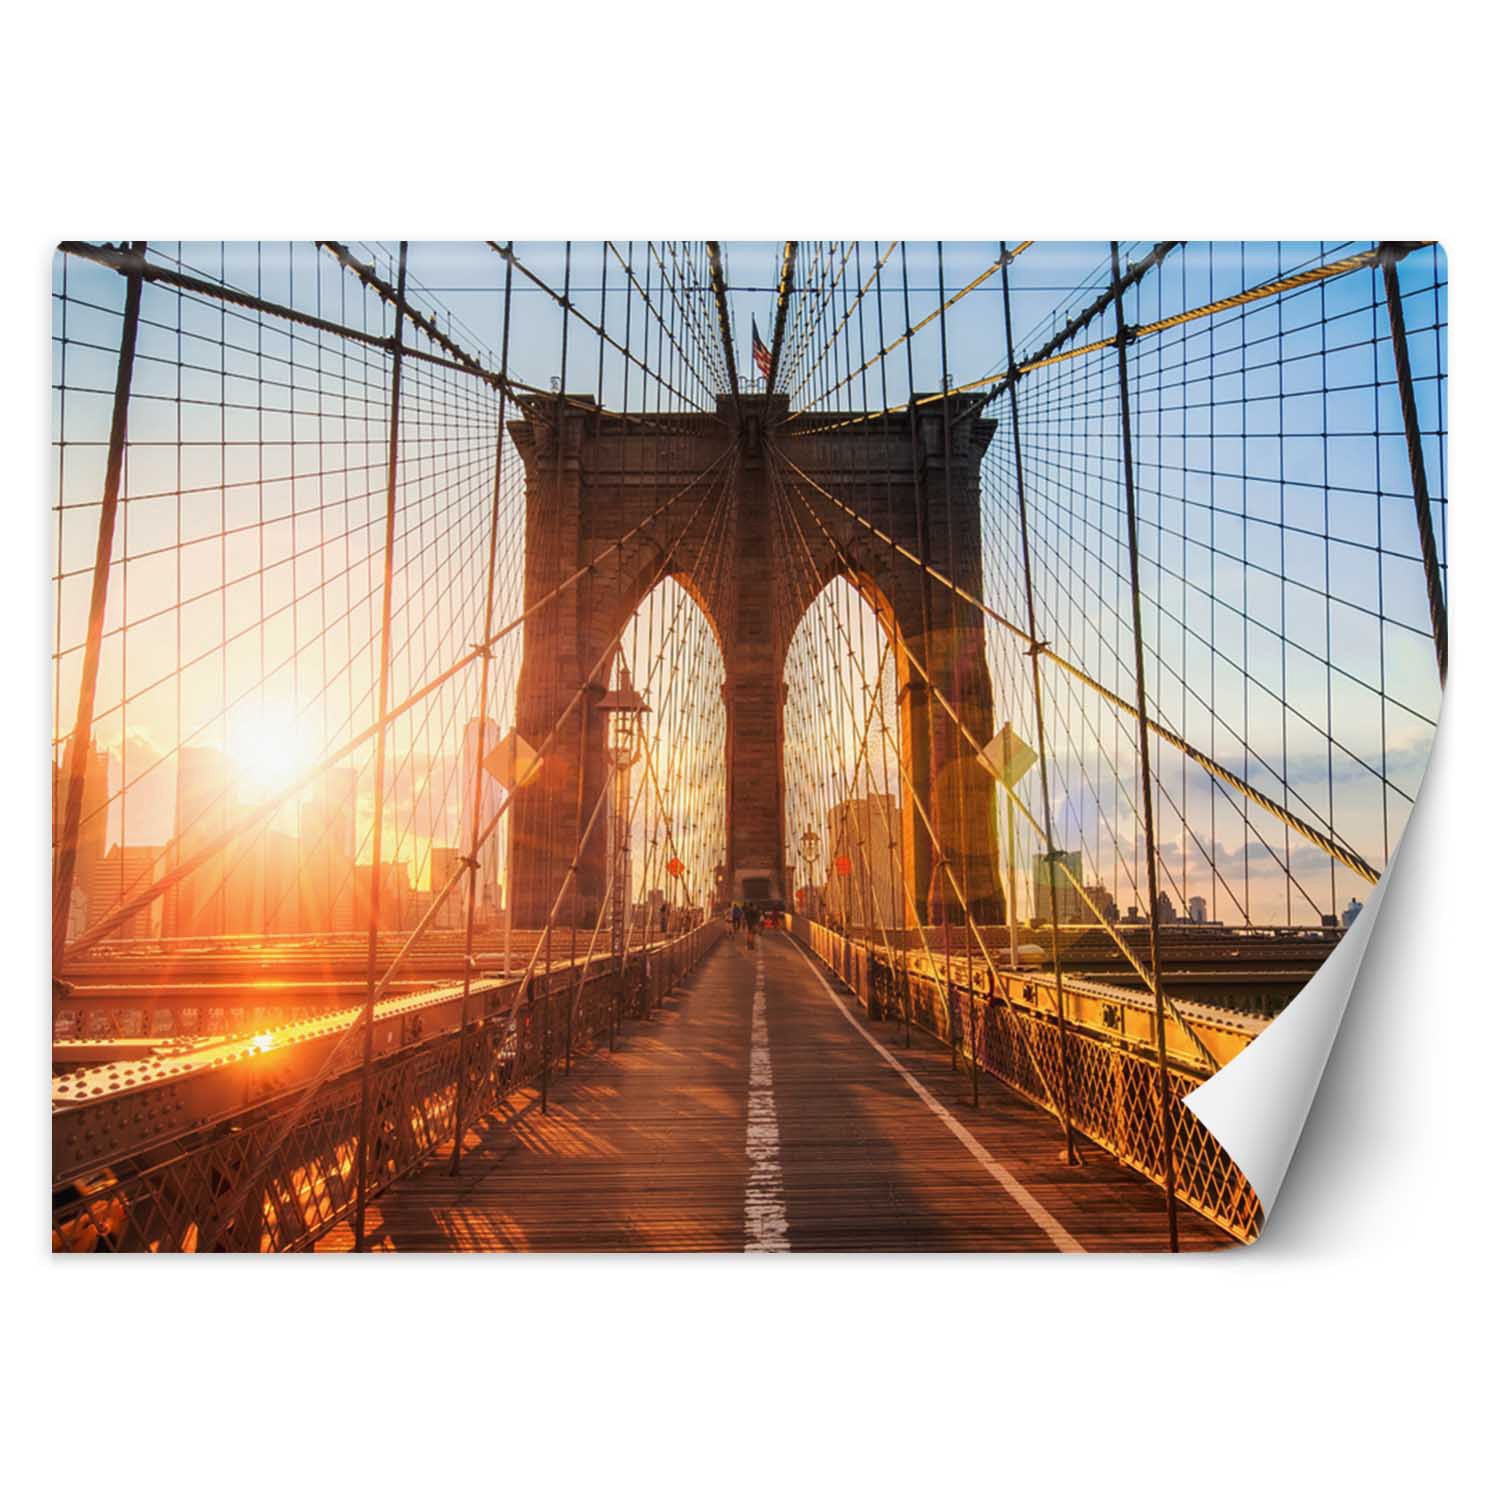 Trend24 – Behang – Brooklyn Bridge – Behangpapier – Fotobehang – Behang Woonkamer – 250x175x2 cm – Incl. behanglijm